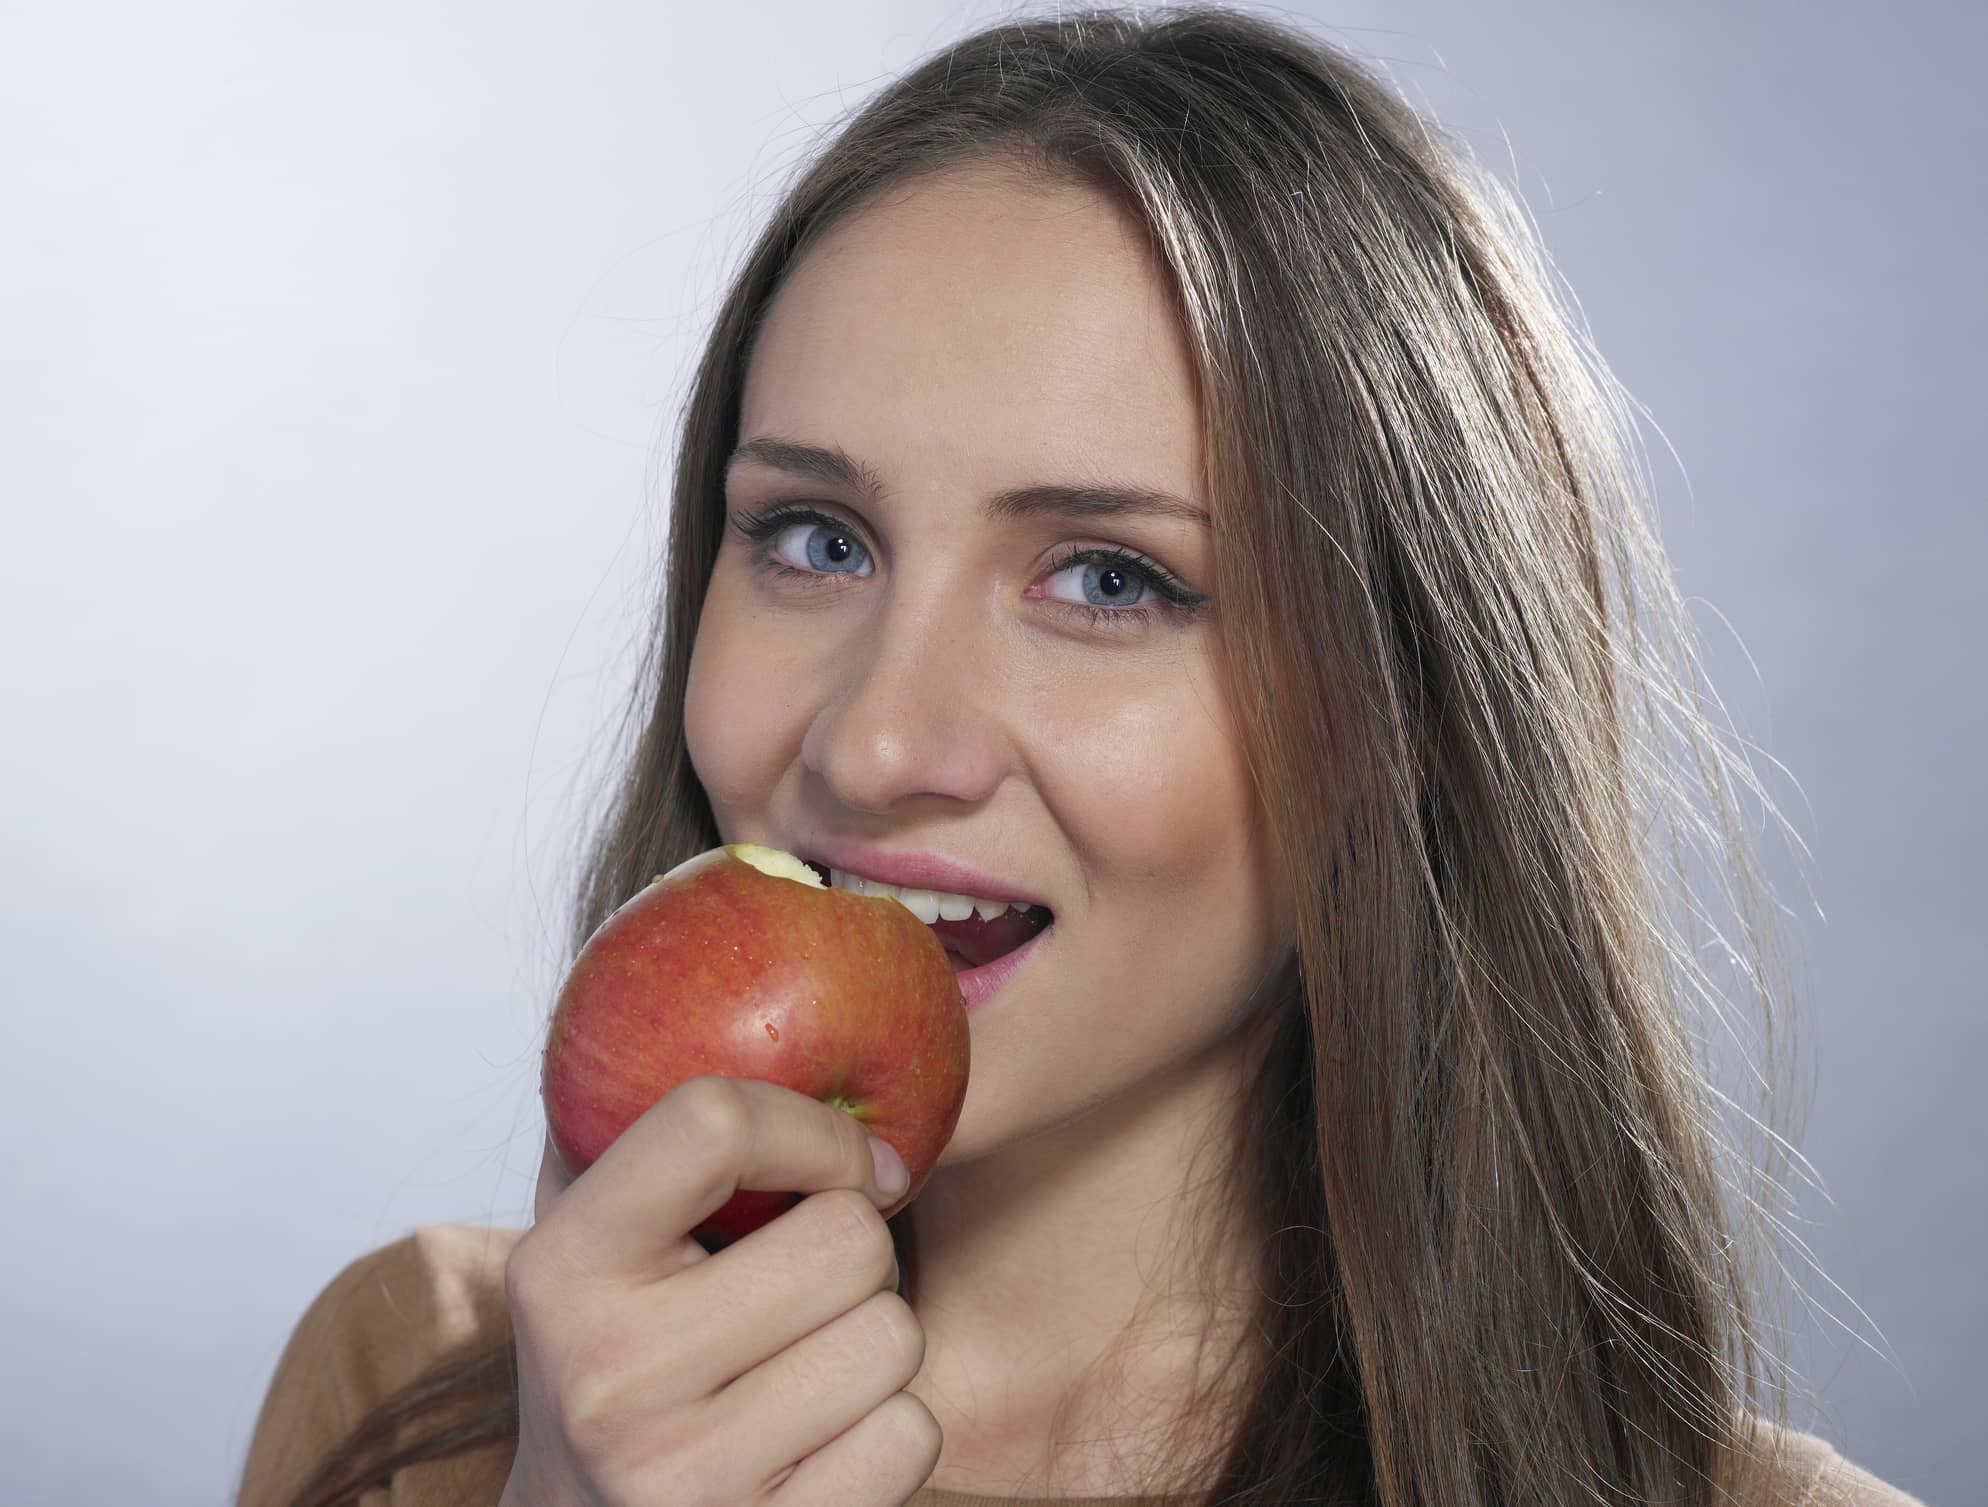 Eine hübsche brünette Frau beißt in einen Apfel ihrer Gesundheit willen